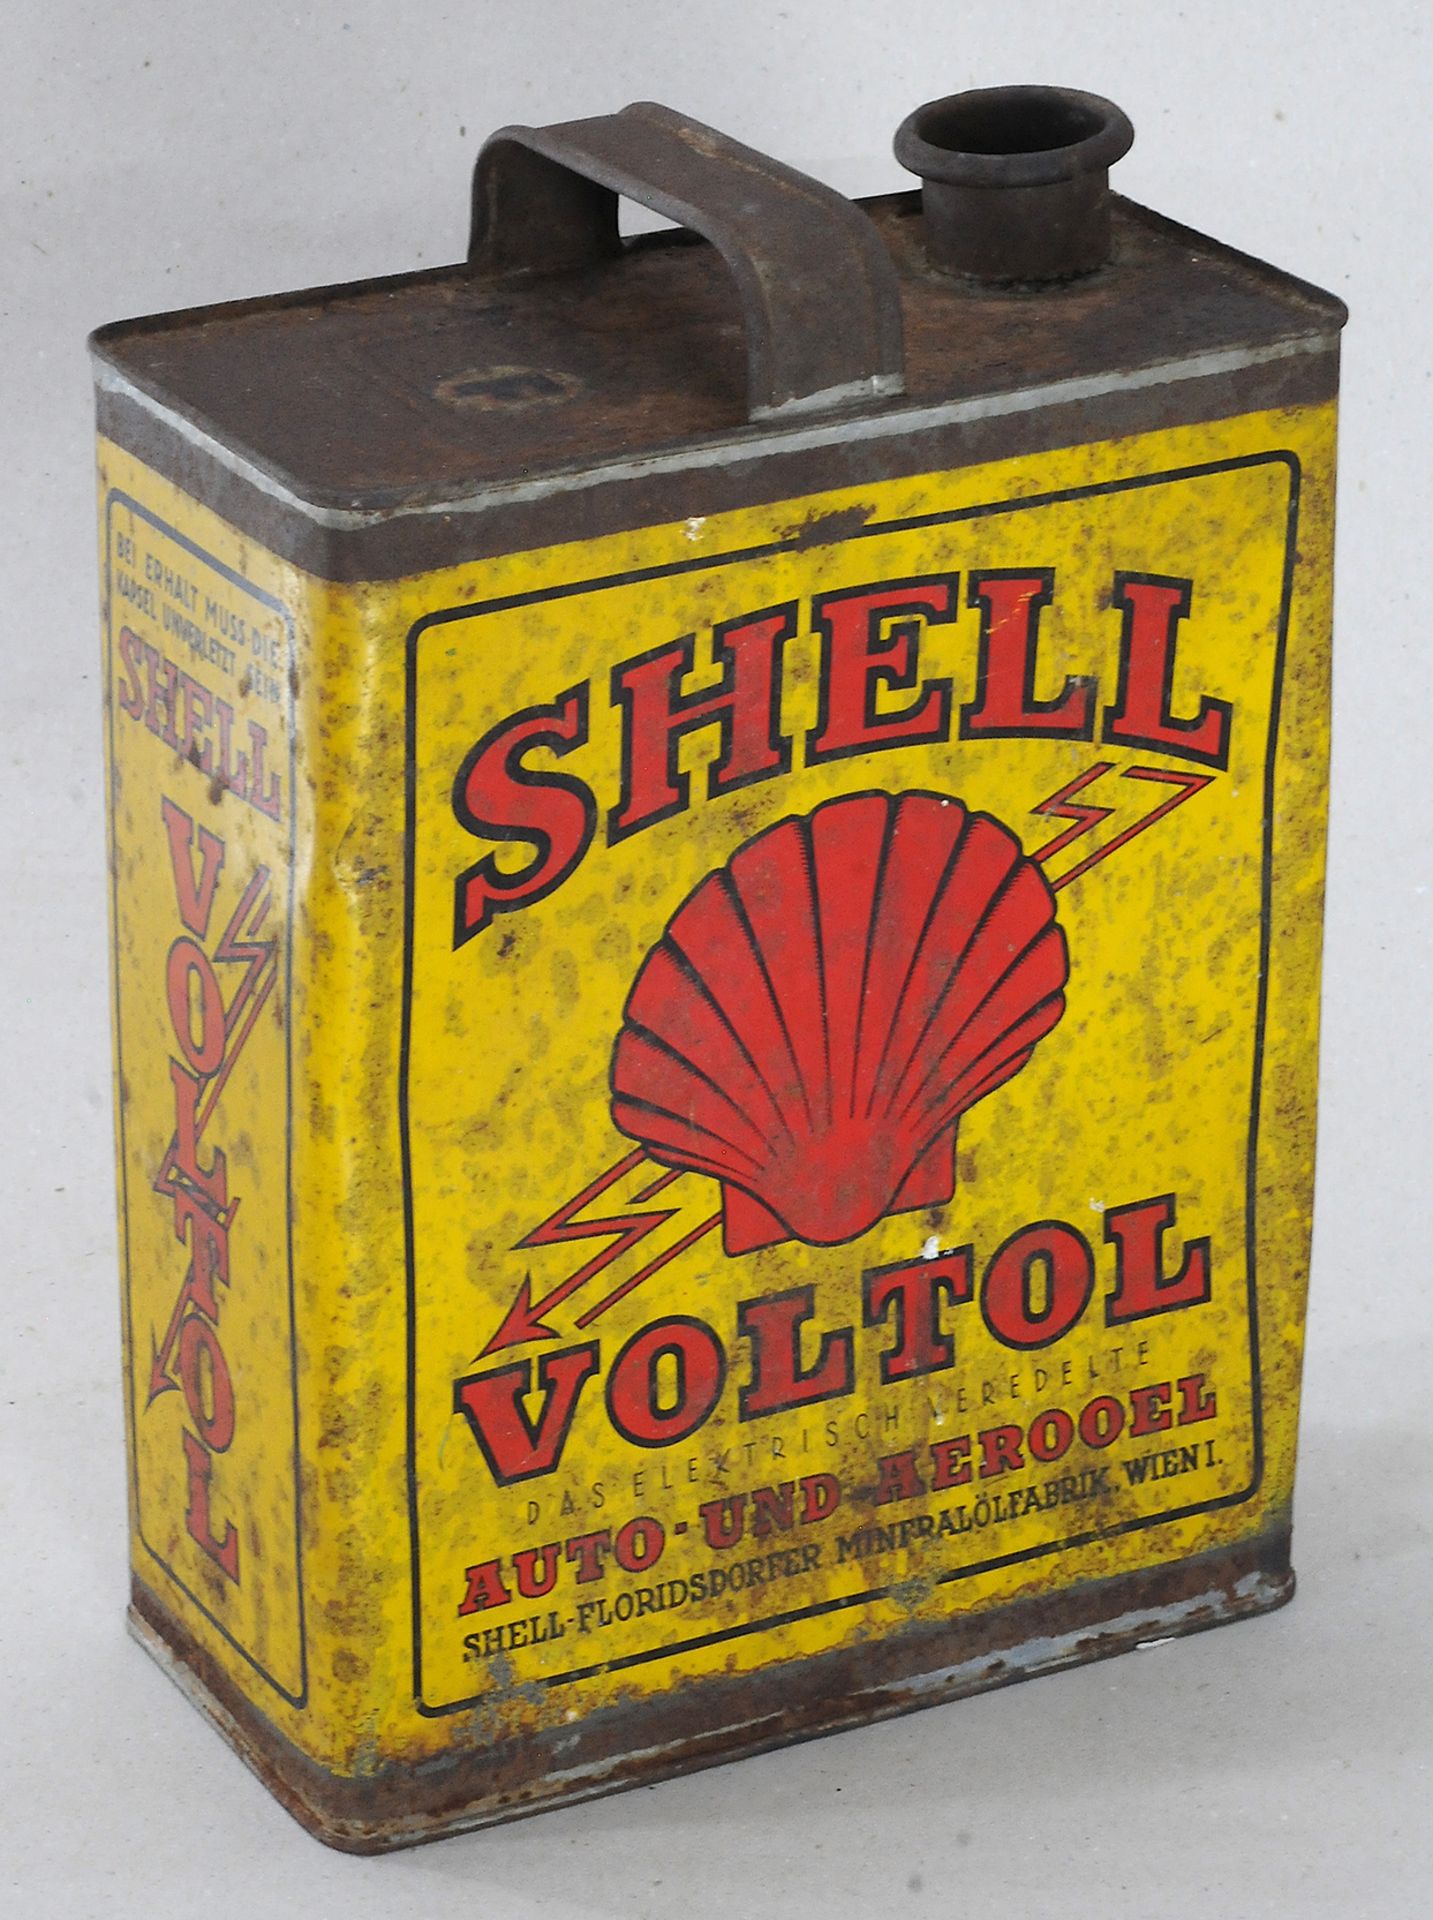 Shell Voltol 5 Liter Öldose - Image 2 of 2